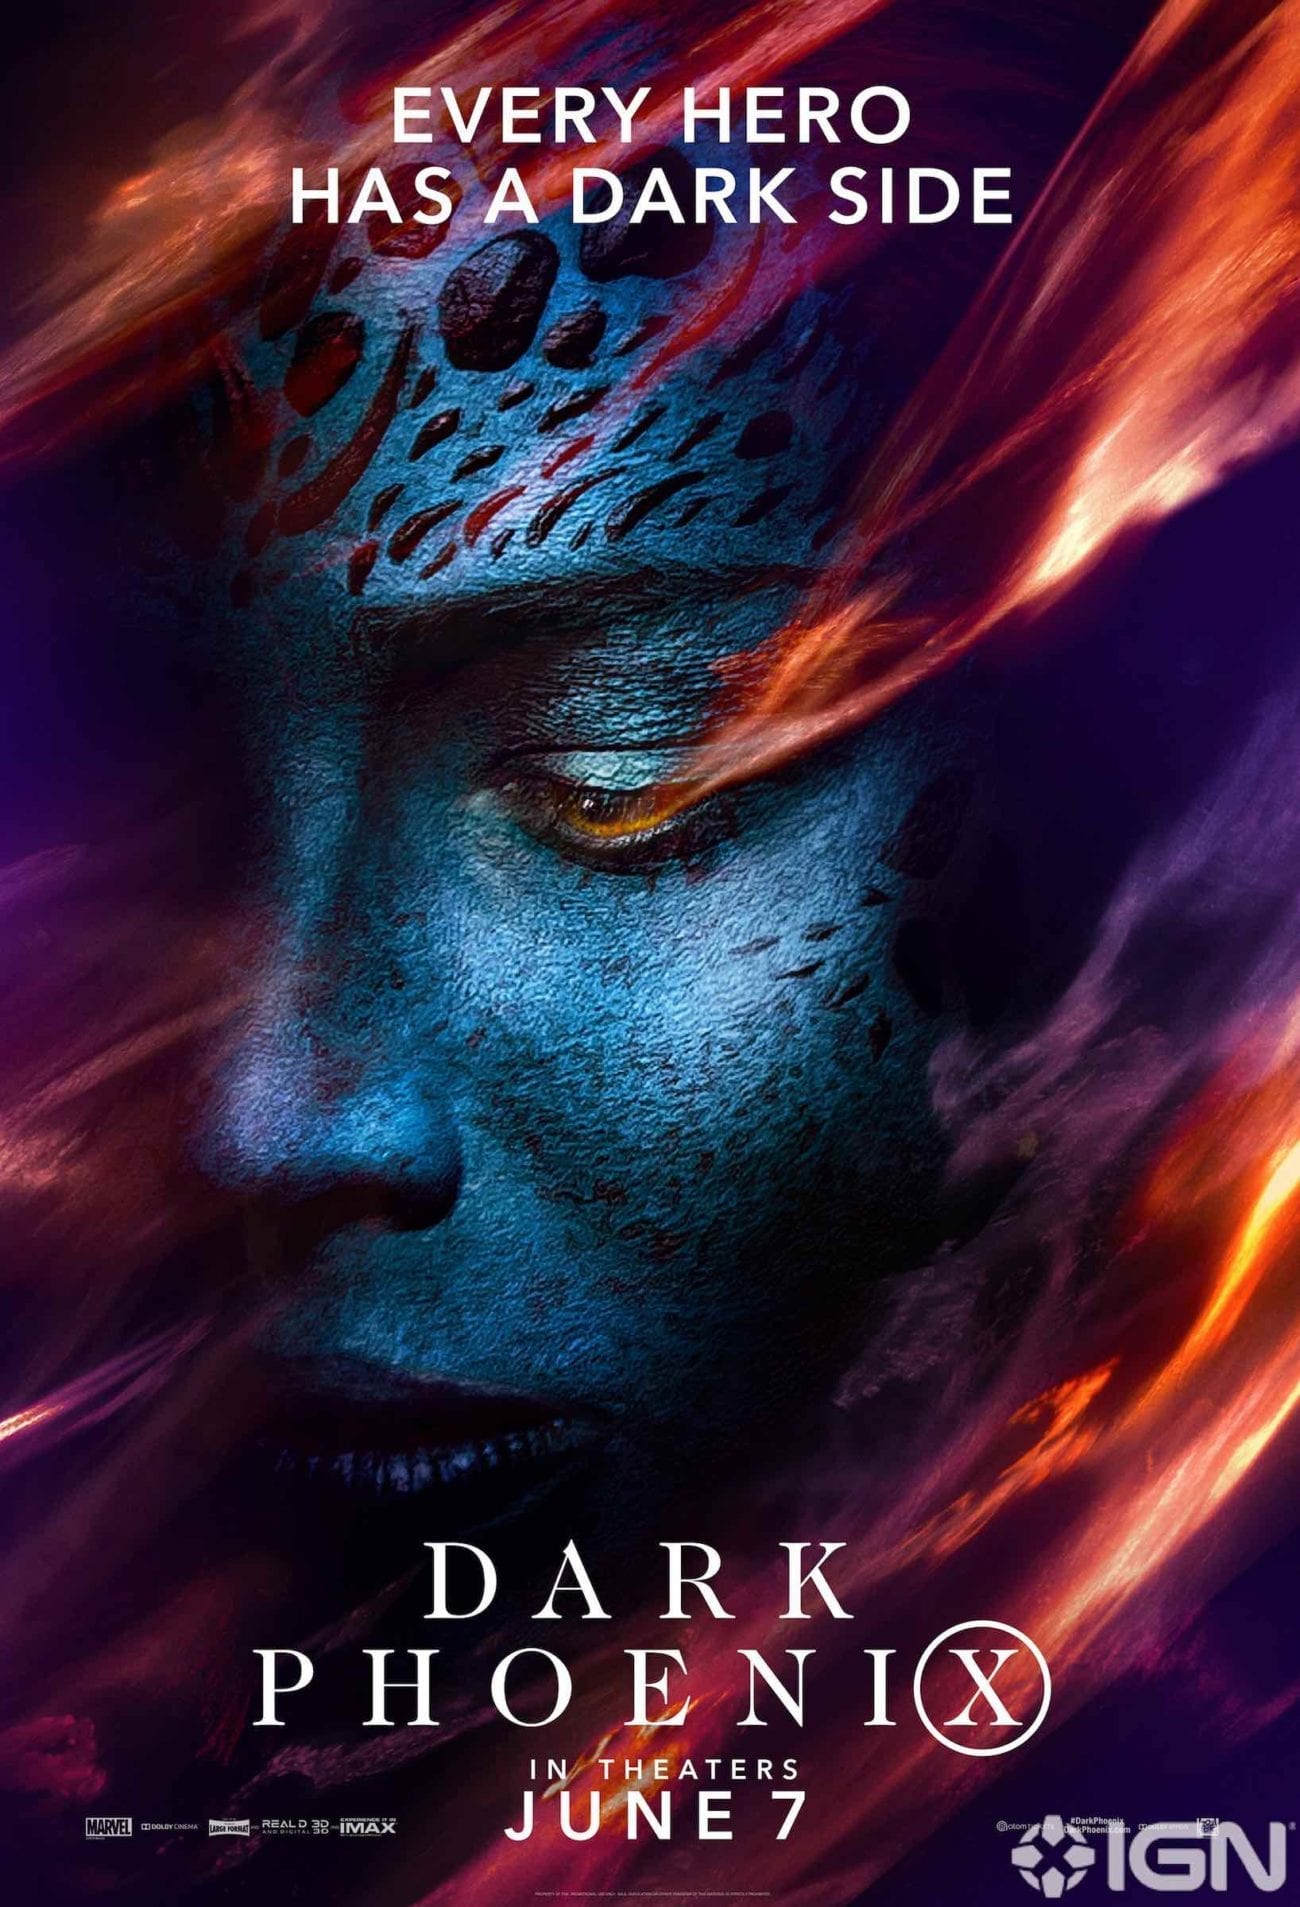 Sophie Turner Dark Phoenix 2019 Movie Wallpapers